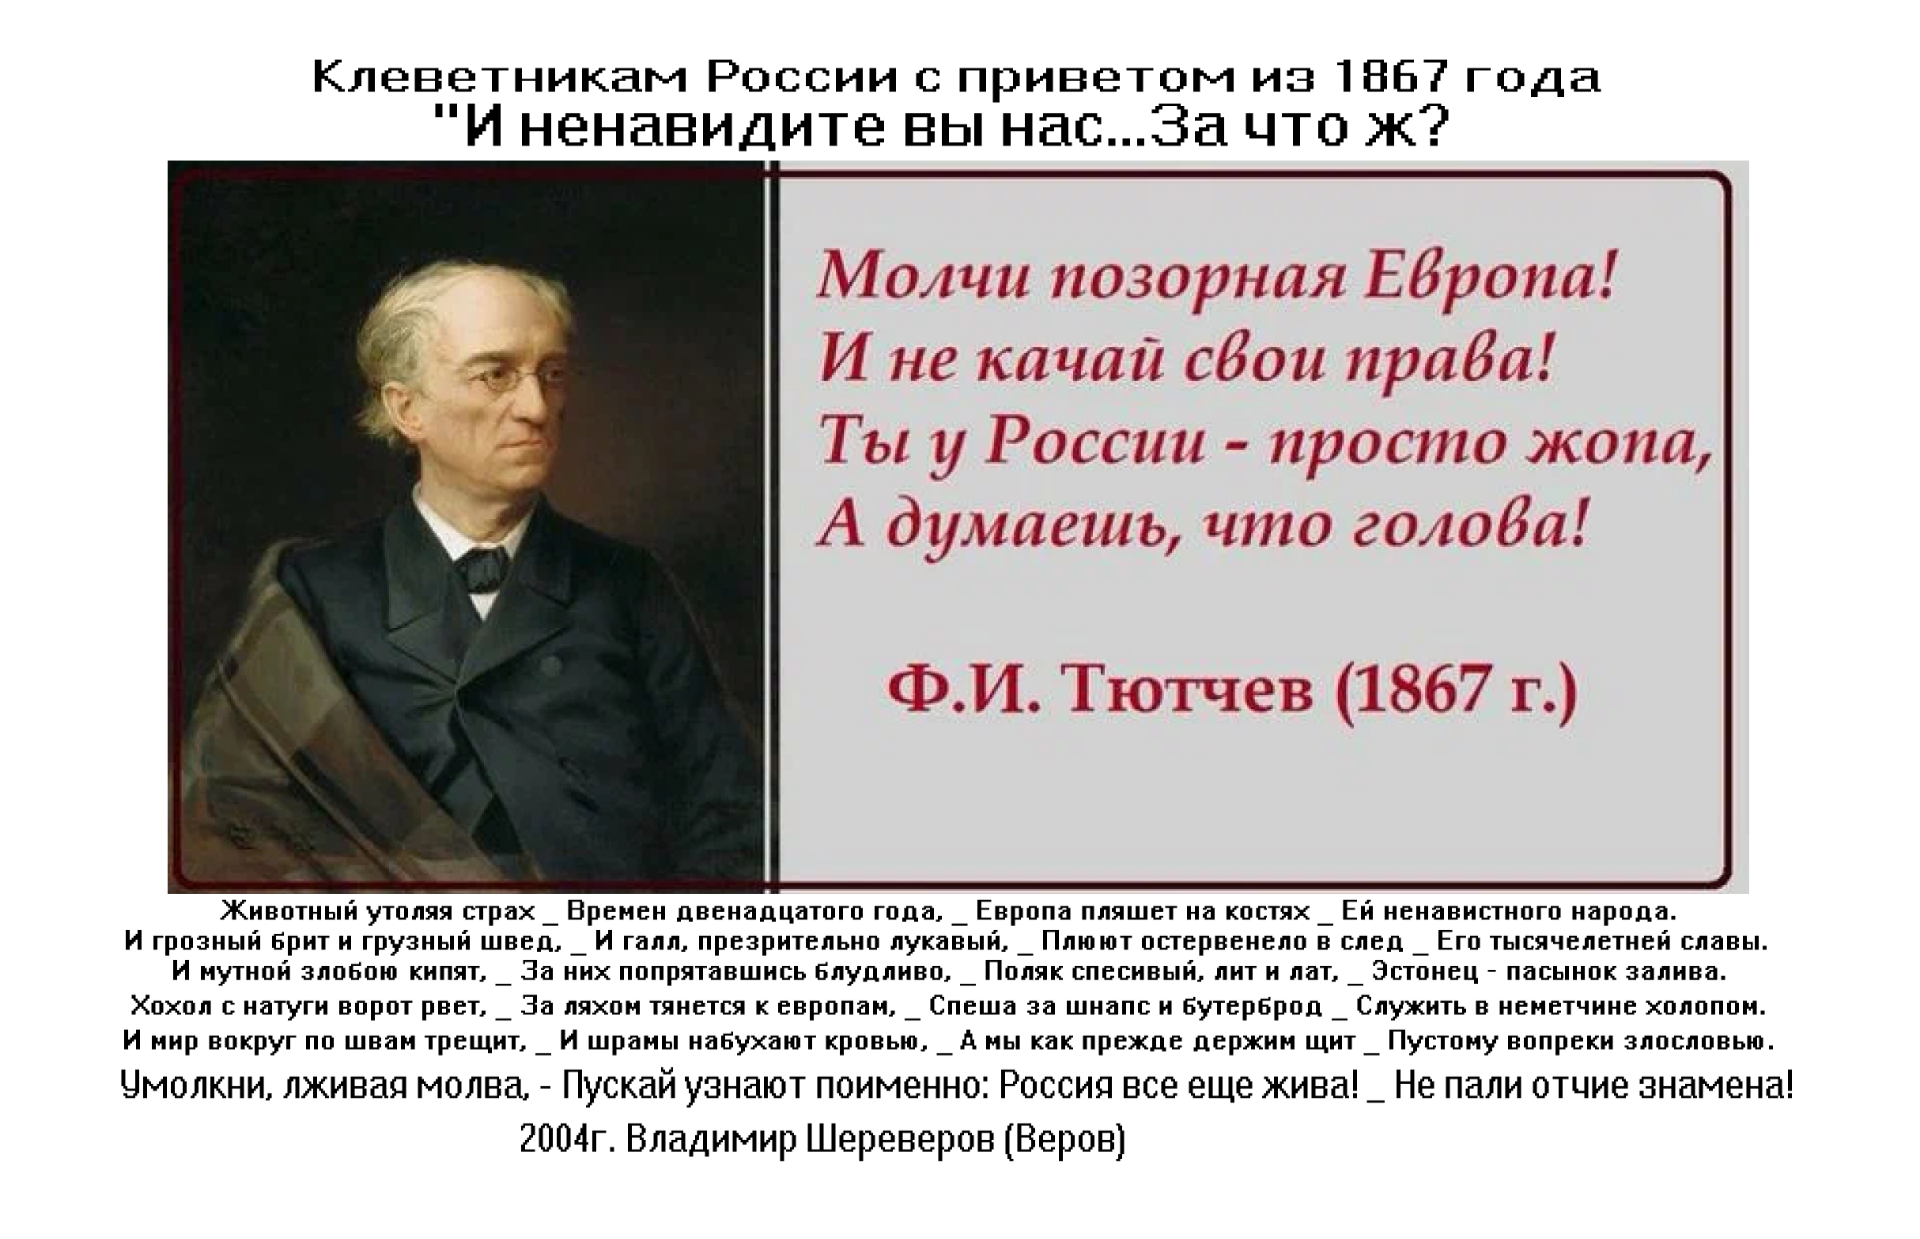 Клеветникам России с приветом из 1867 года.png